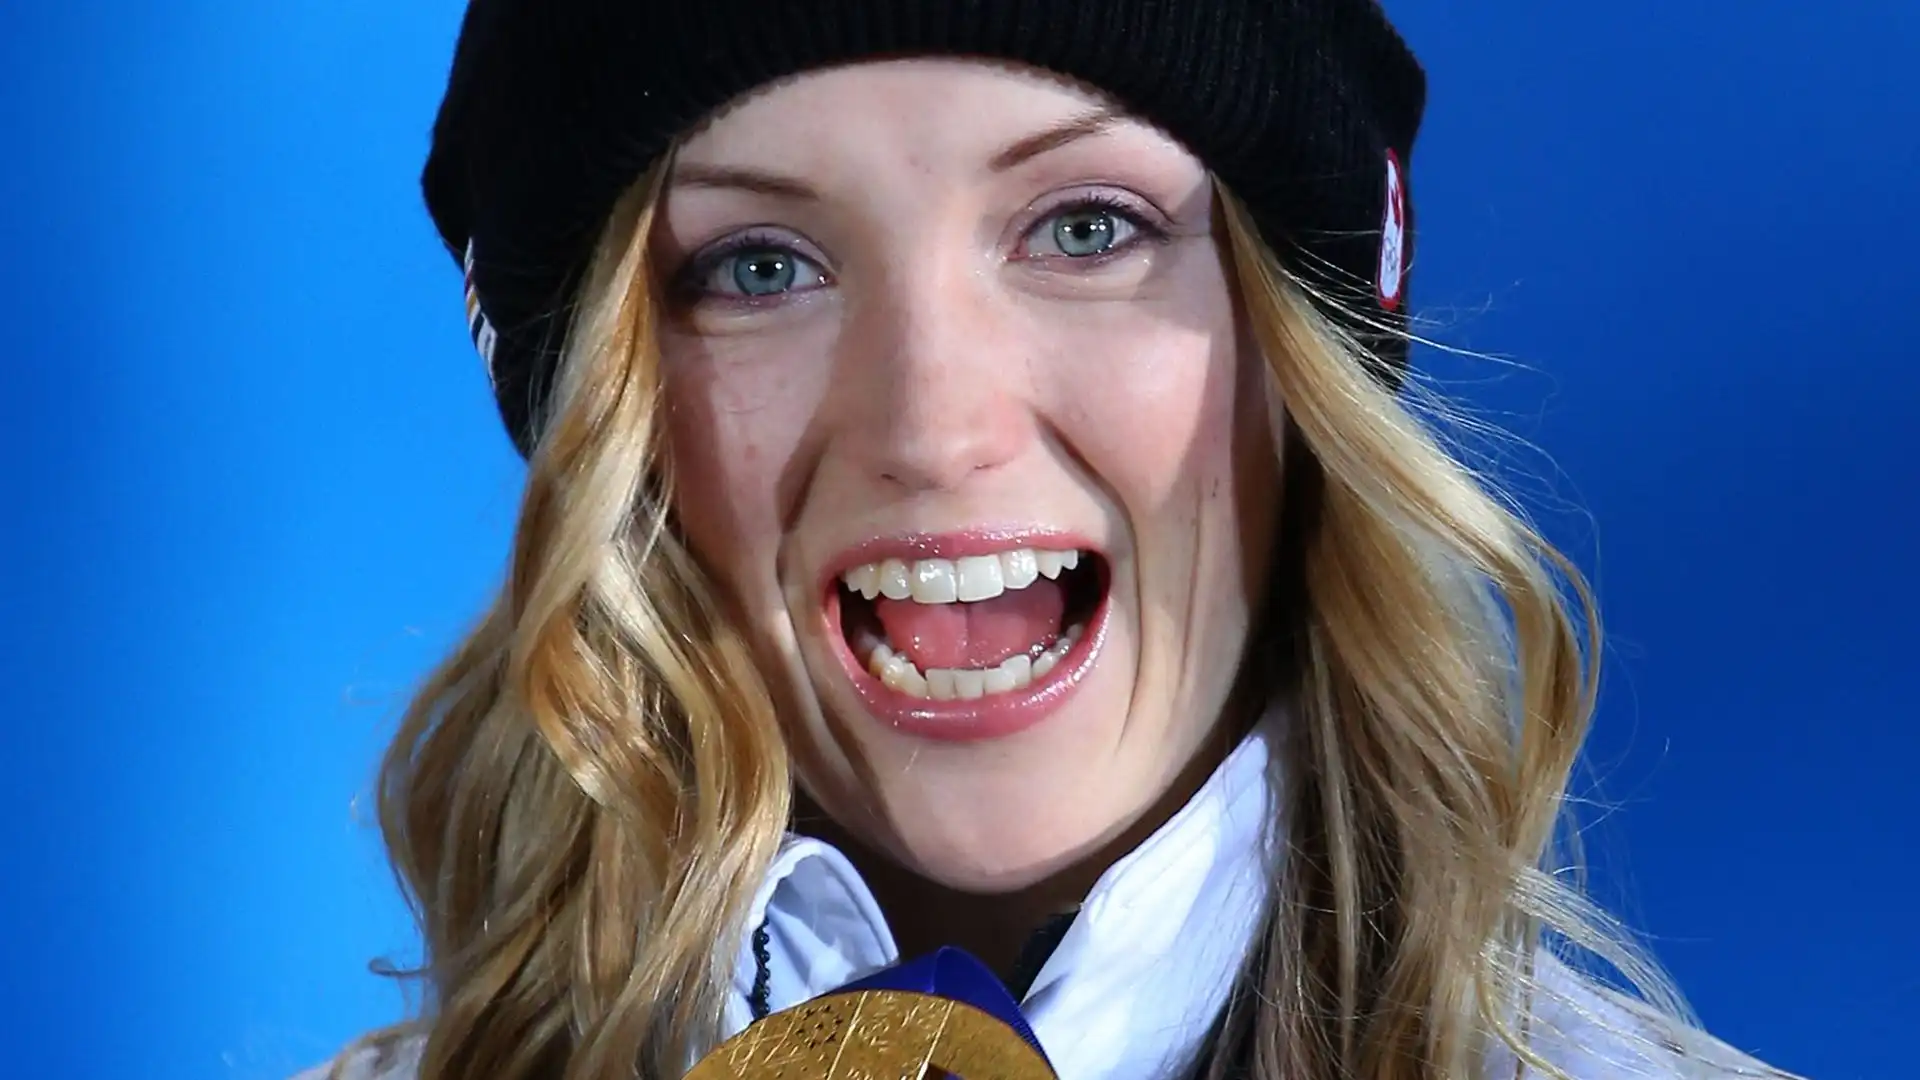 Justine ha vinto due medaglie olimpiche: 1 oro a Soci nel 2014 e 1 argento a Pyeongchang 2018.È la sorella minore di Maxime e Chloé Dufour-Lapointe, a loro volta sciatrici freestyle di alto livello.